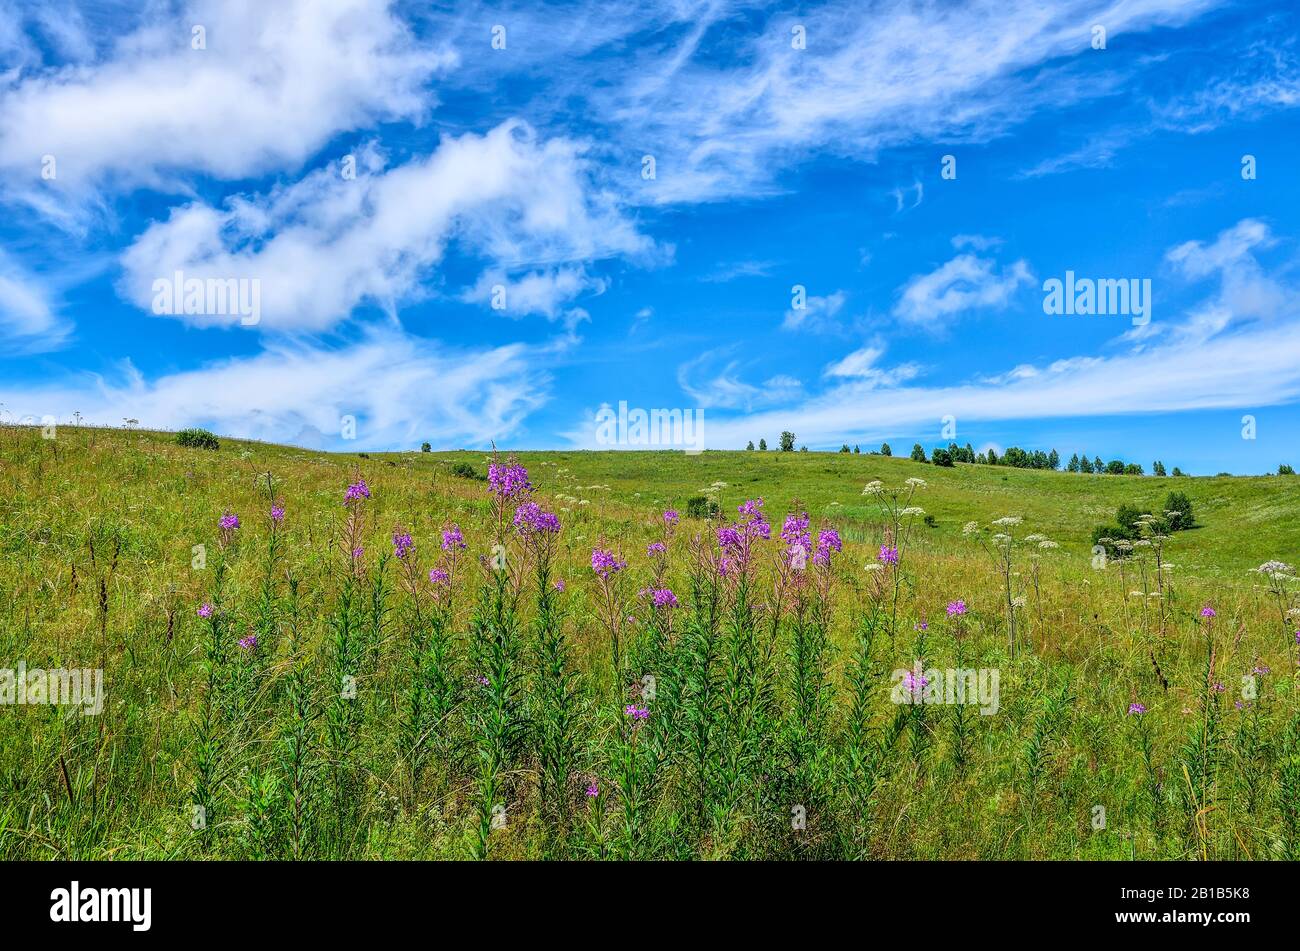 Pradera de verano con hierba de fuego en flor (Chamaenerion angustifolium o Epilobium angustifolium) - hierba medicinal en la ladera en el soleado día de verano con bea Foto de stock